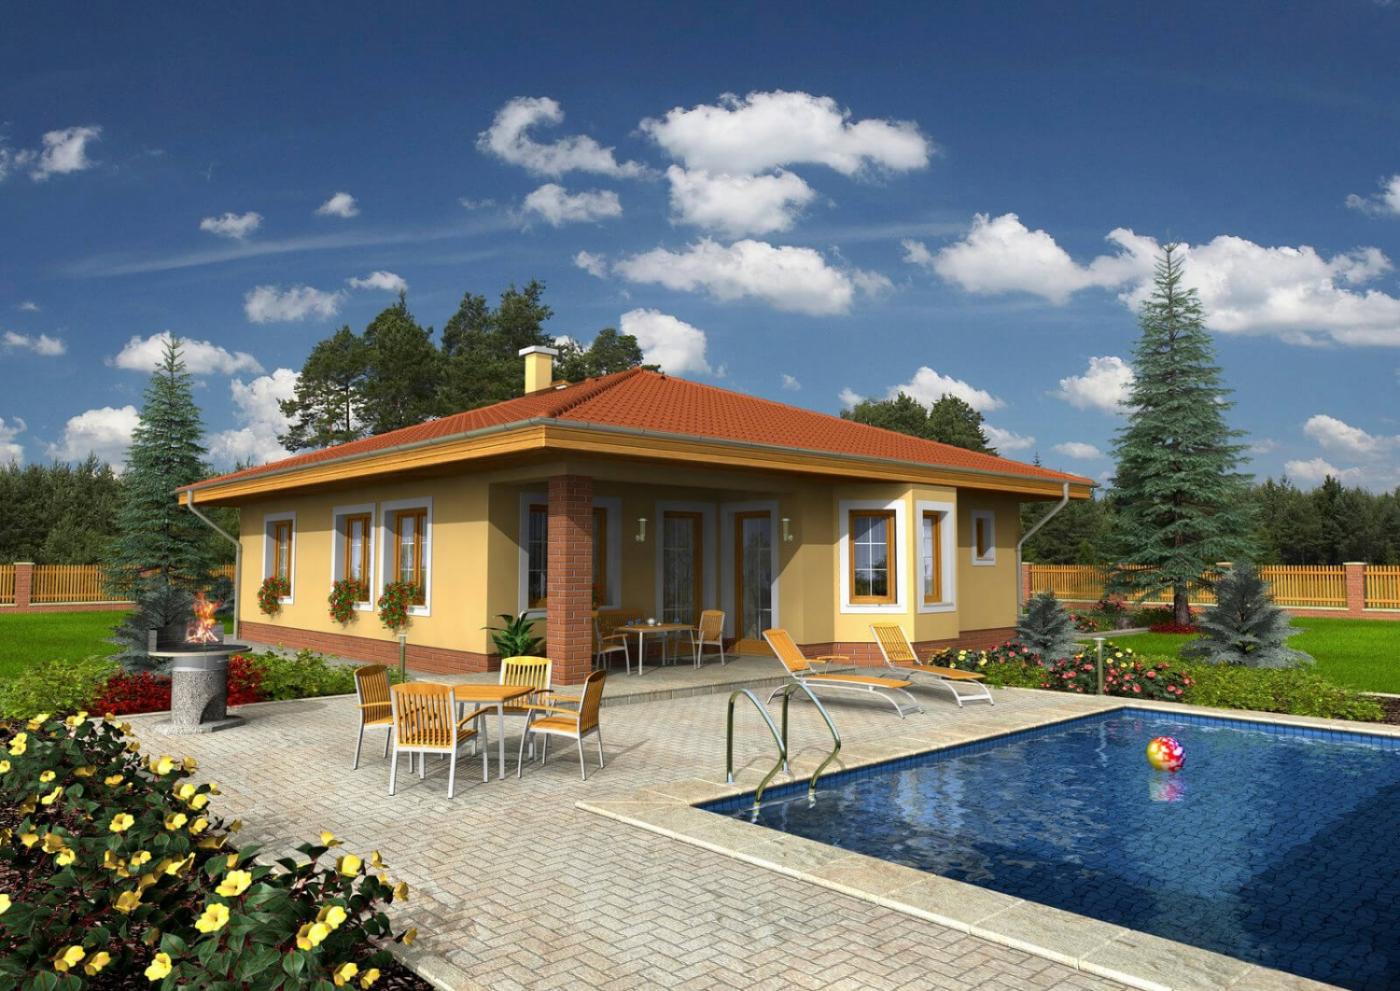 BUNGALOW 91 - Casa unifamiliar con un tejado a cuatro aguas y zona de  comedor curva.